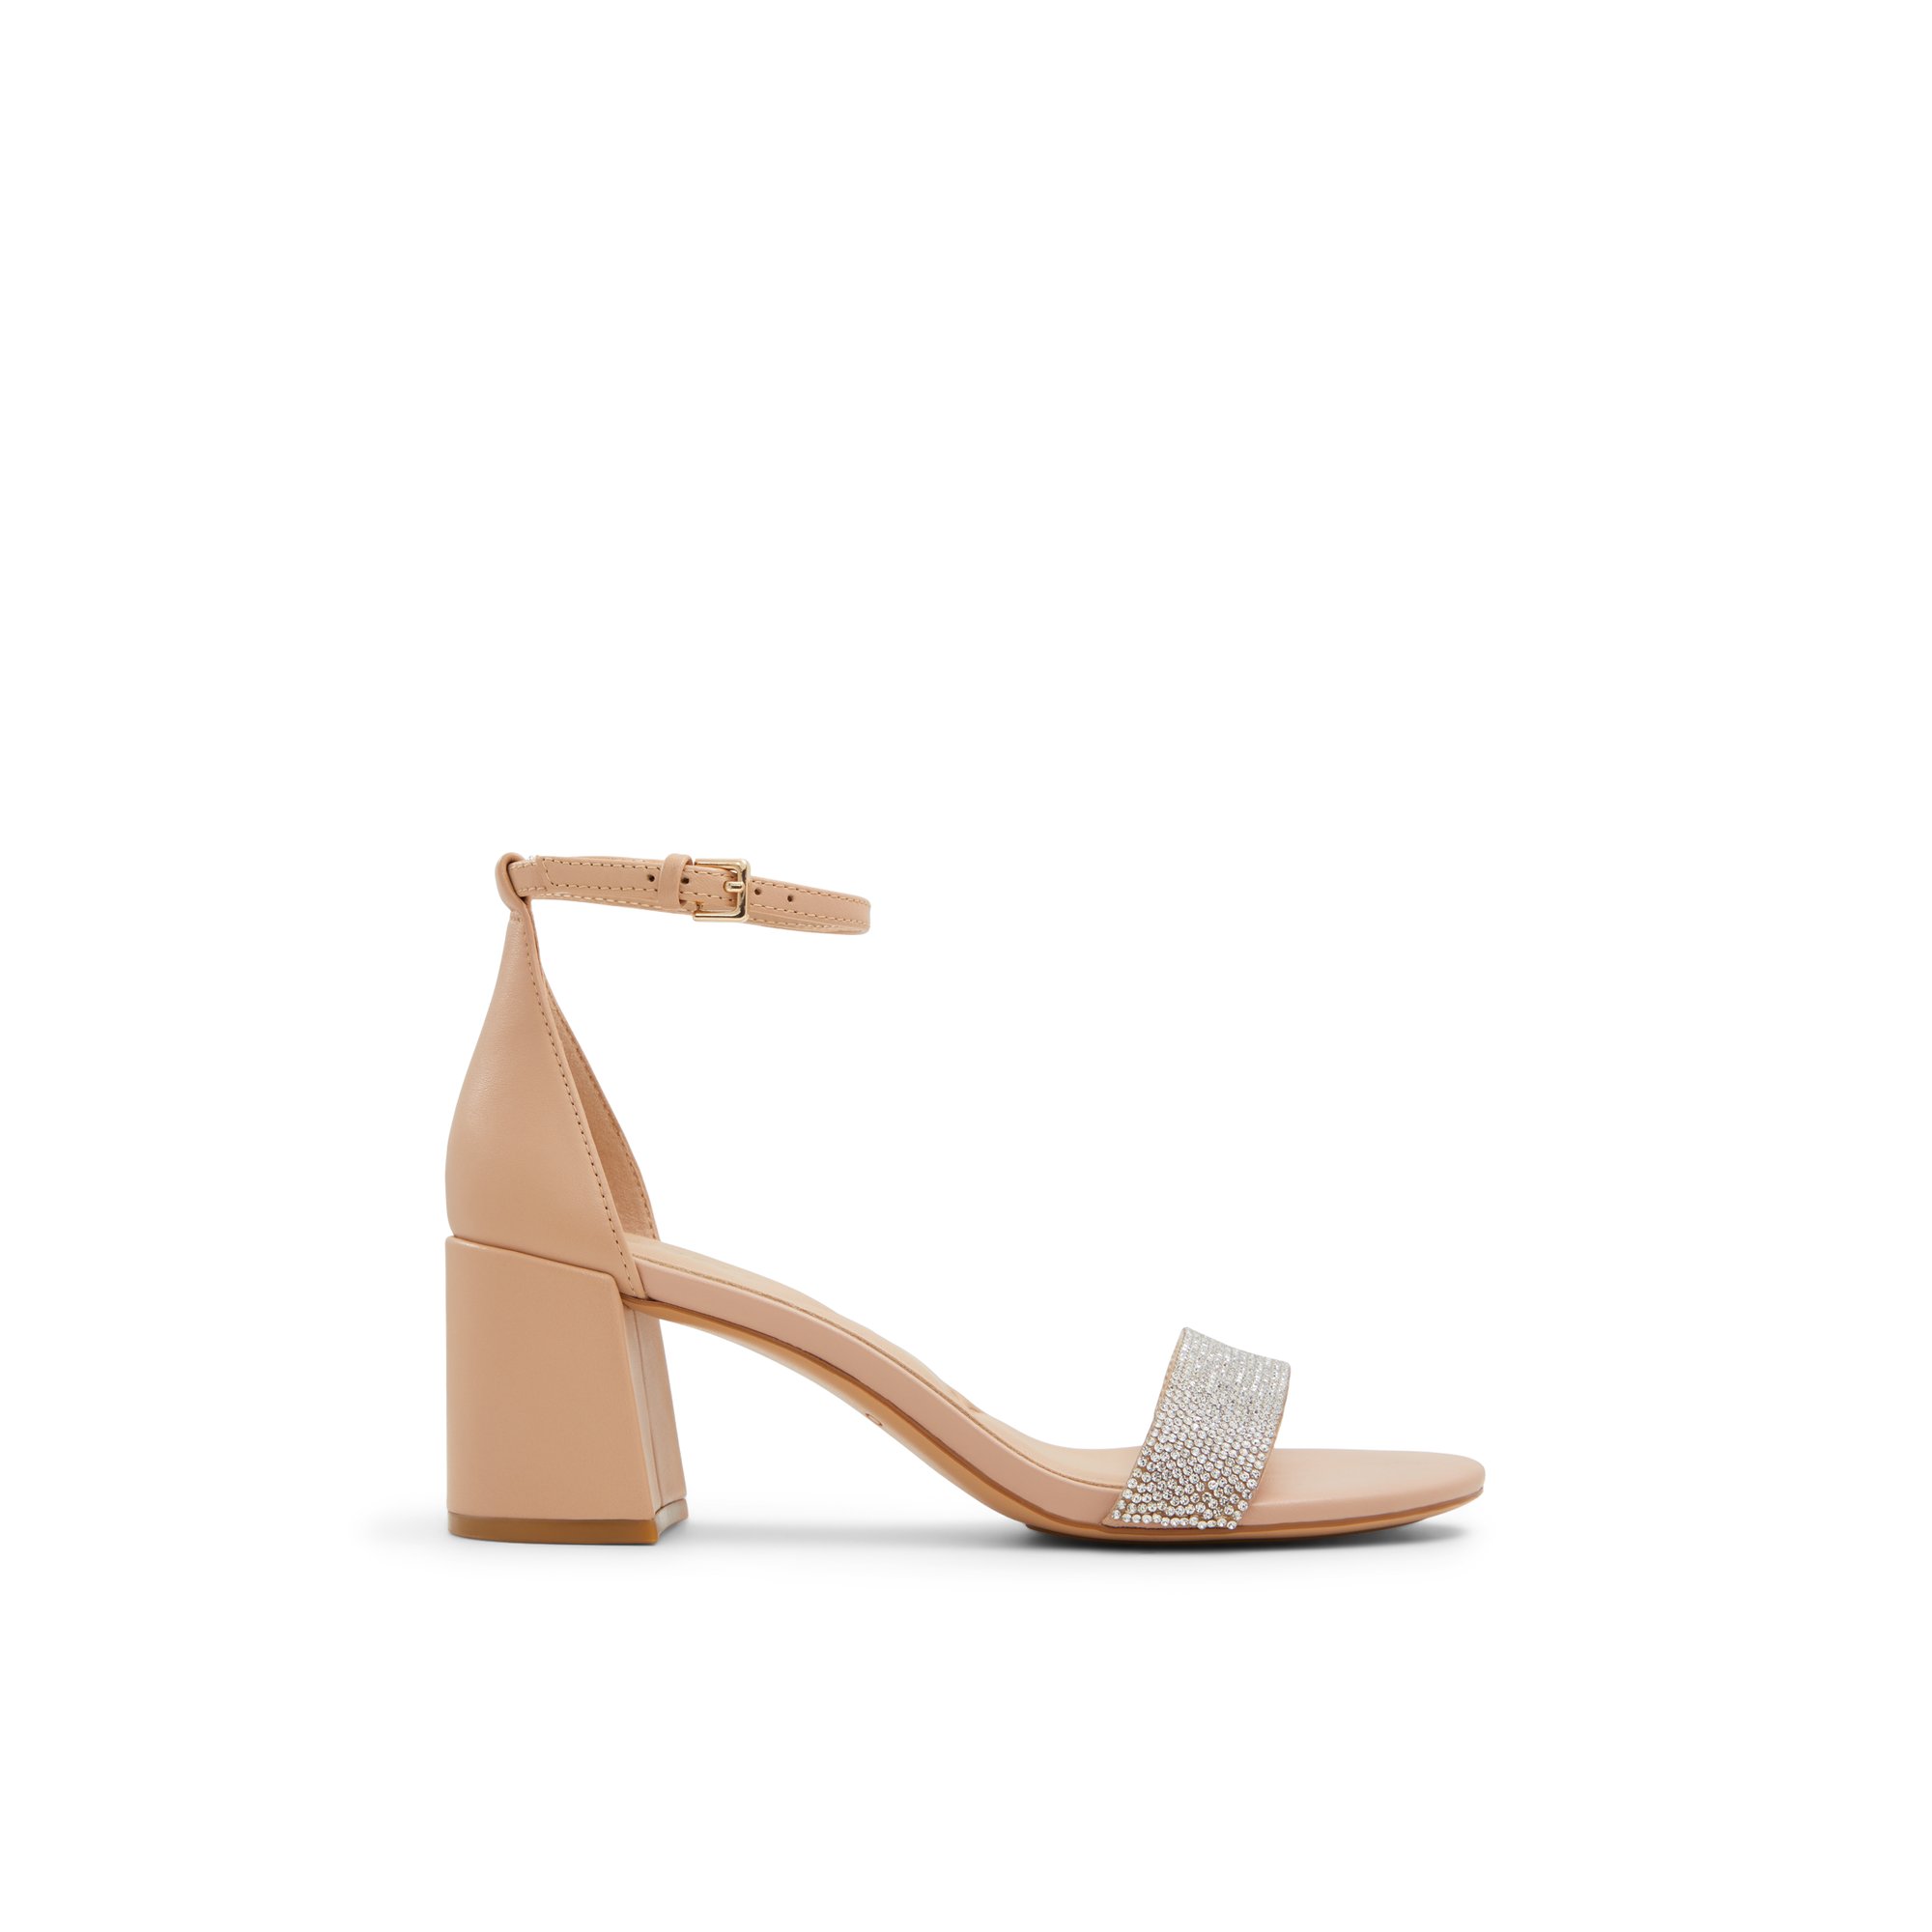 ALDO Pristine - Women's Strappy Sandal Sandals - Beige